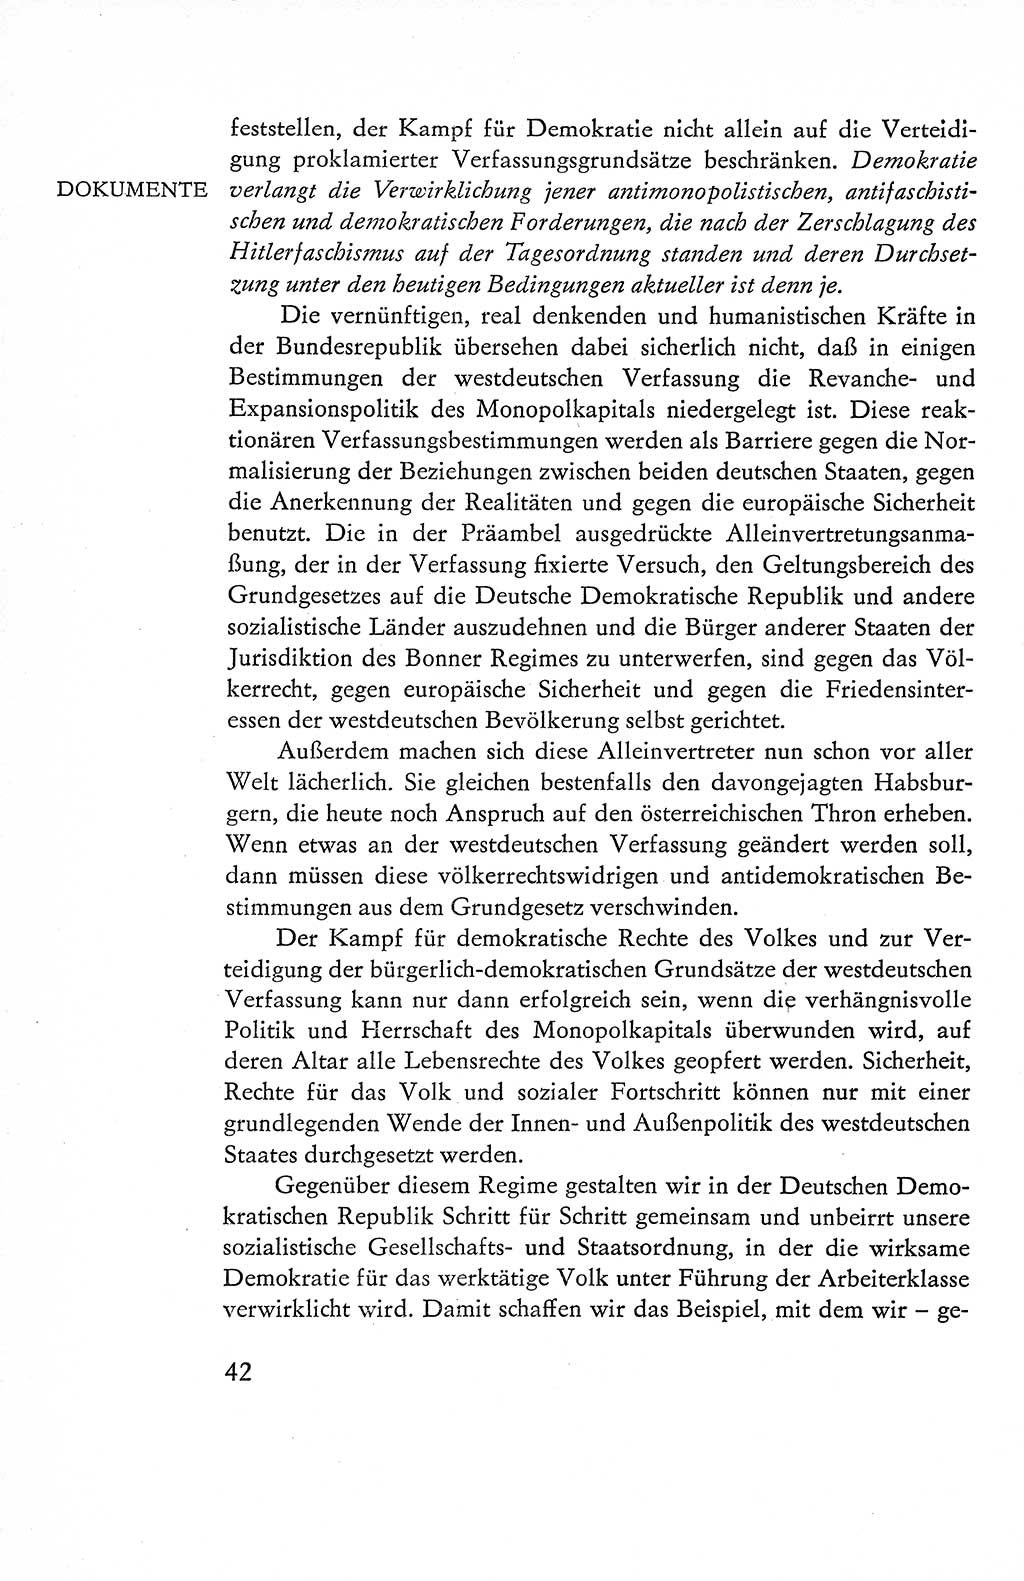 Verfassung der Deutschen Demokratischen Republik (DDR), Dokumente, Kommentar 1969, Band 1, Seite 42 (Verf. DDR Dok. Komm. 1969, Bd. 1, S. 42)